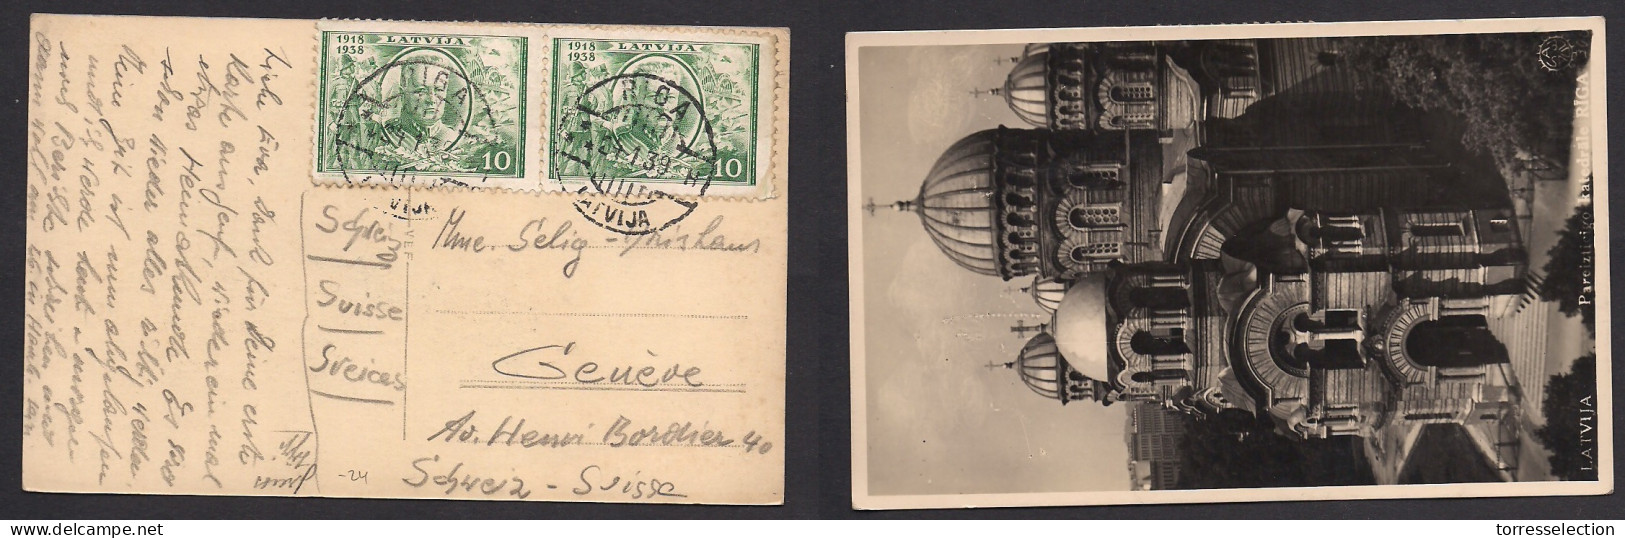 LATVIA. 1939 (24 Jan) Riga - Switzerland, Geneve. Multifkd Pcard. Fine Used. XSALE. - Latvia